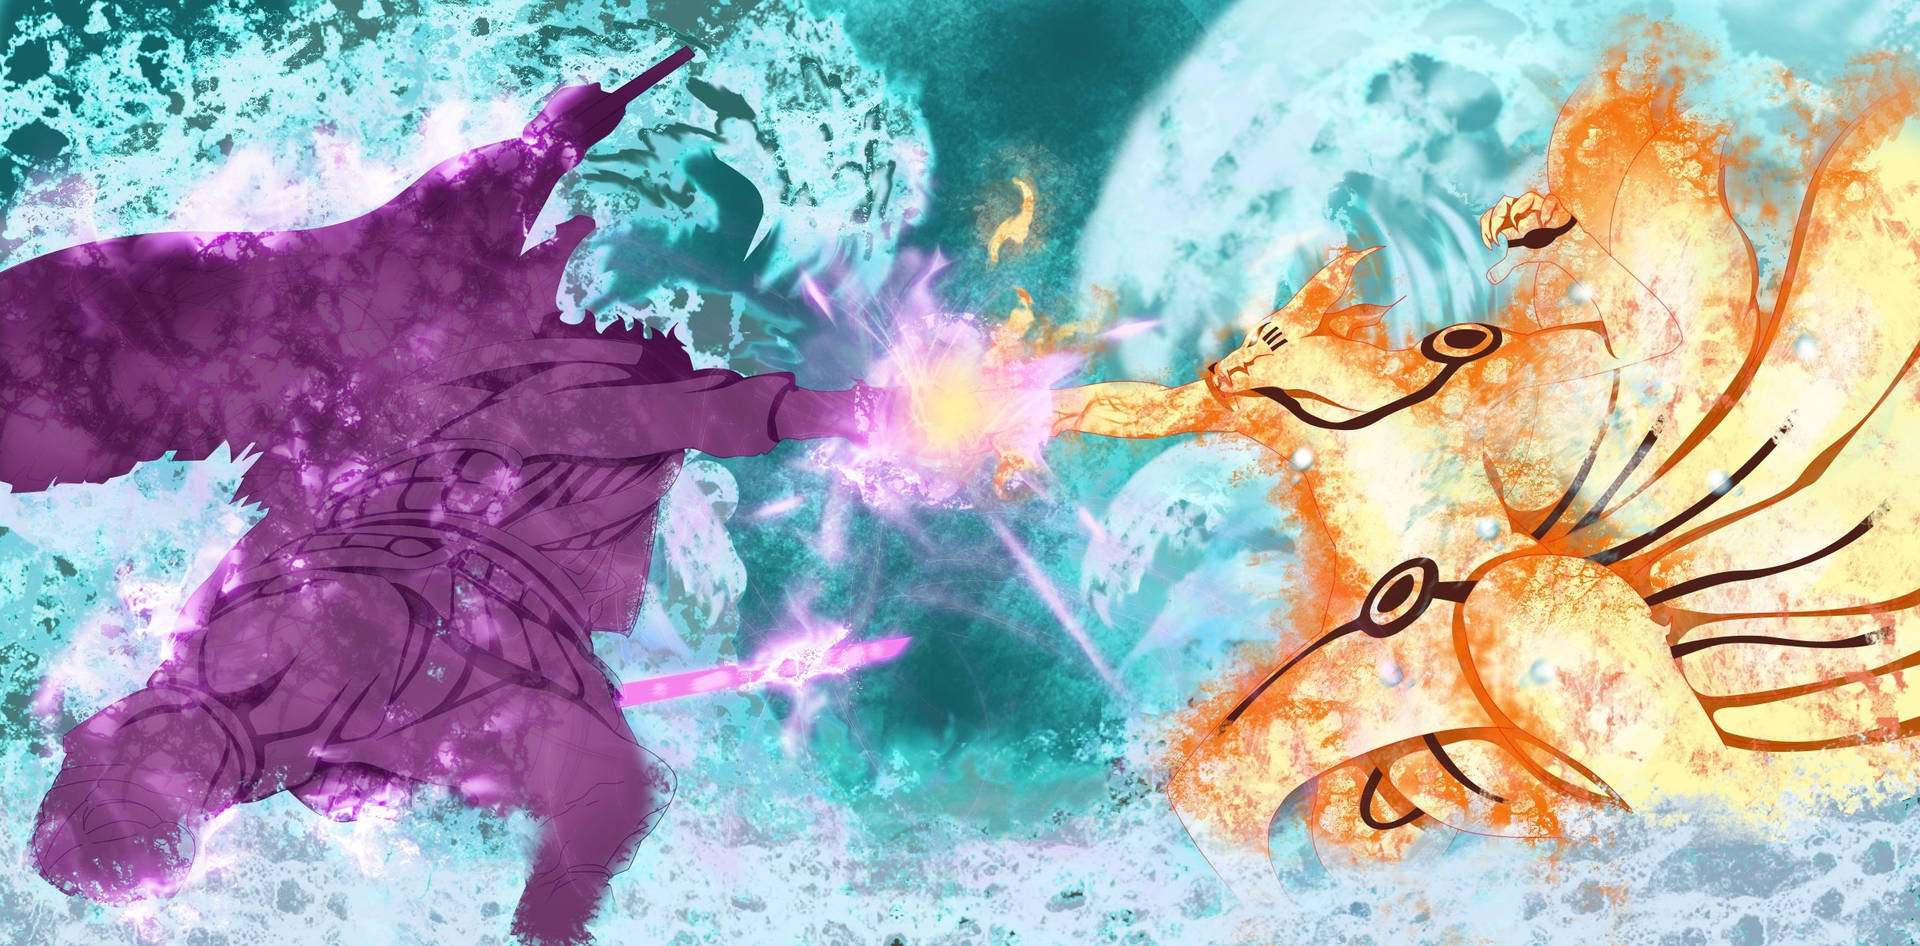 Imagens De Sasuke Vs Naruto